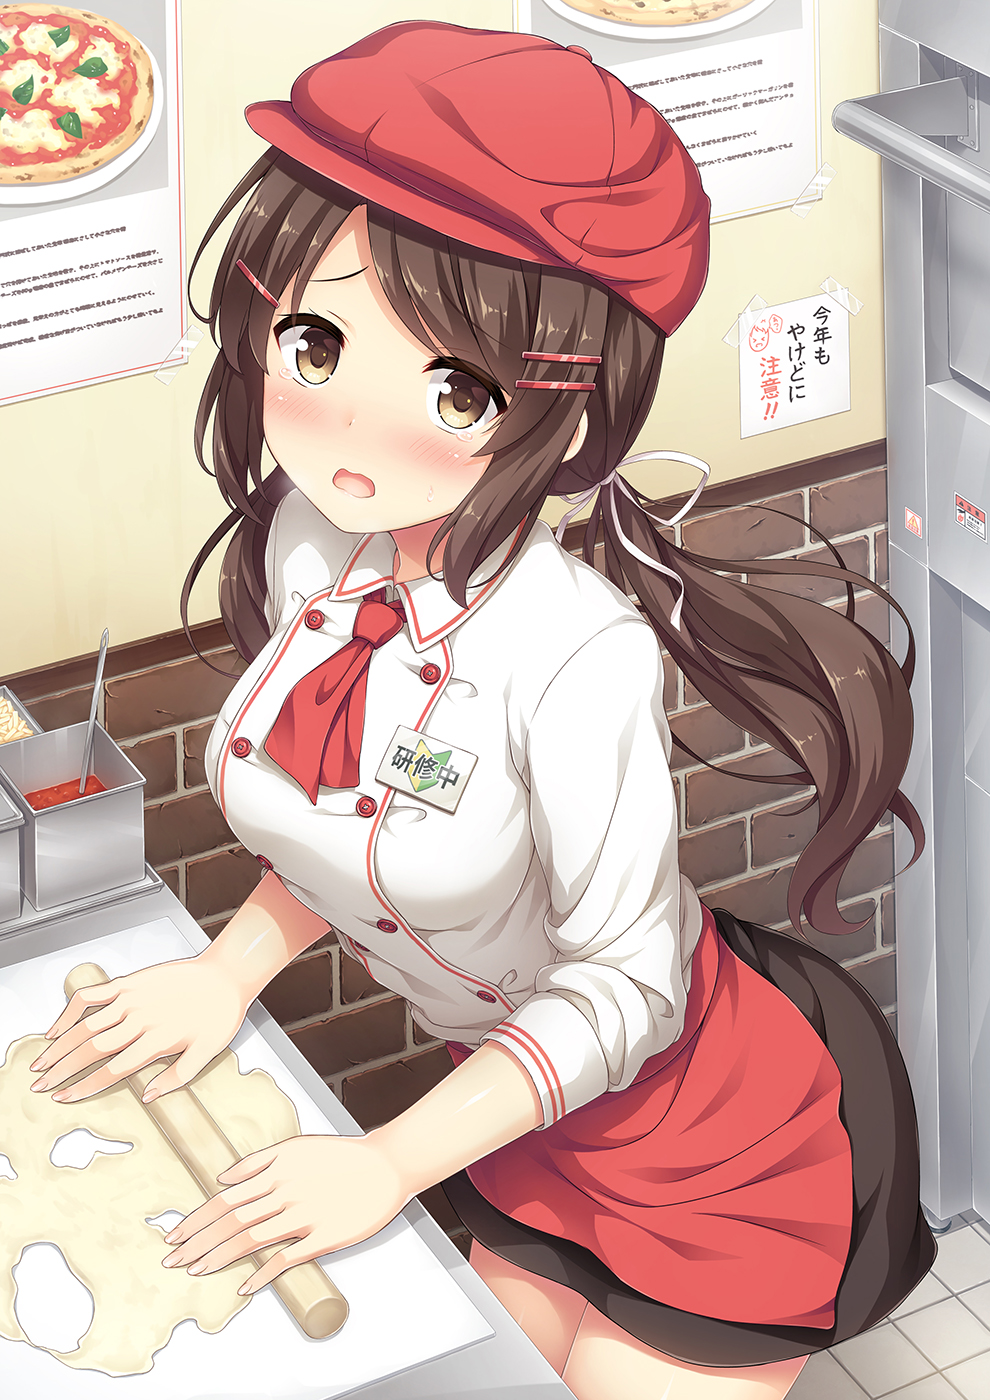 Kết quả hình ảnh cho anime girl đầu bếp